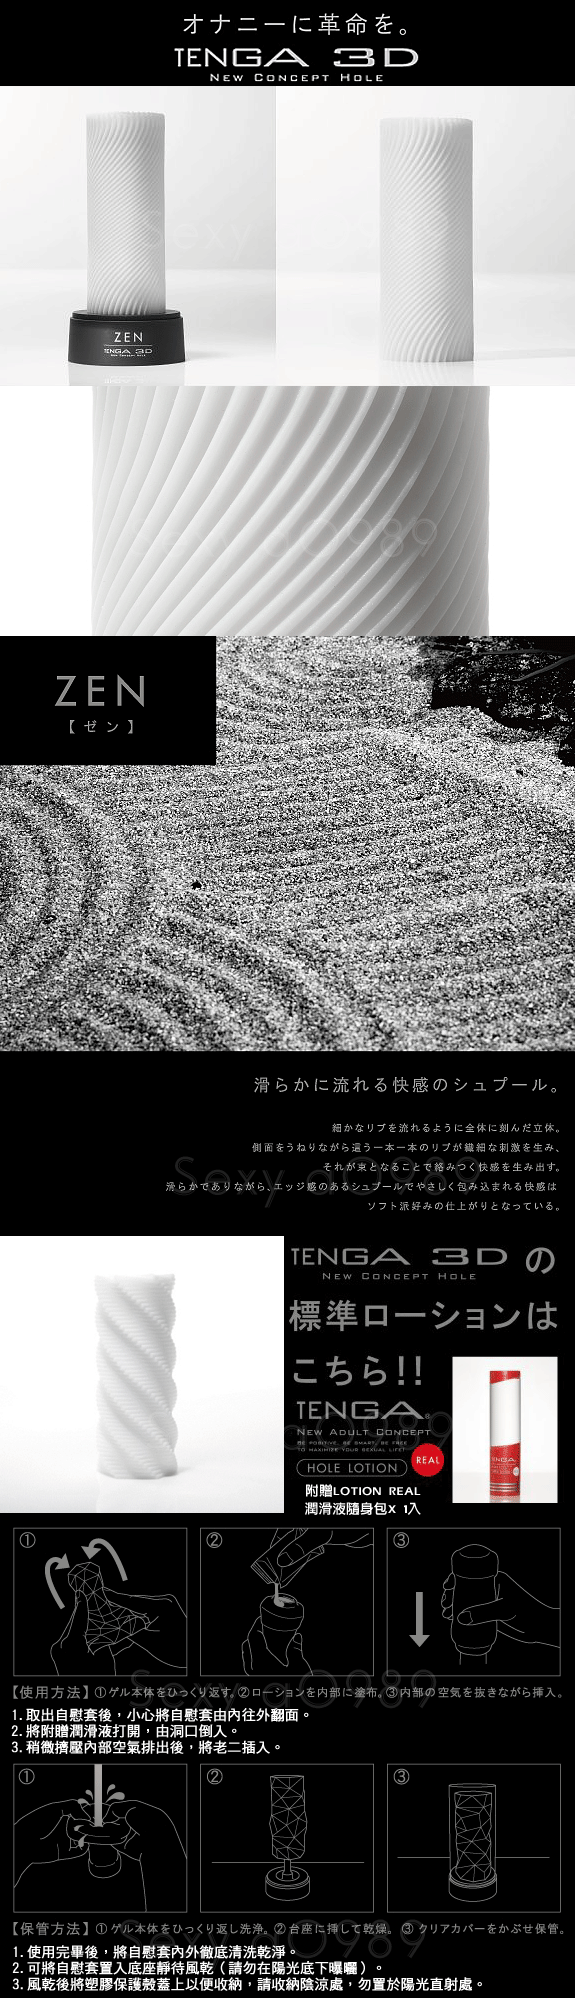 日本TENGA-3D New Concept Hole 立體紋路非貫通自慰套TNH-003 Zen(波紋)(特)